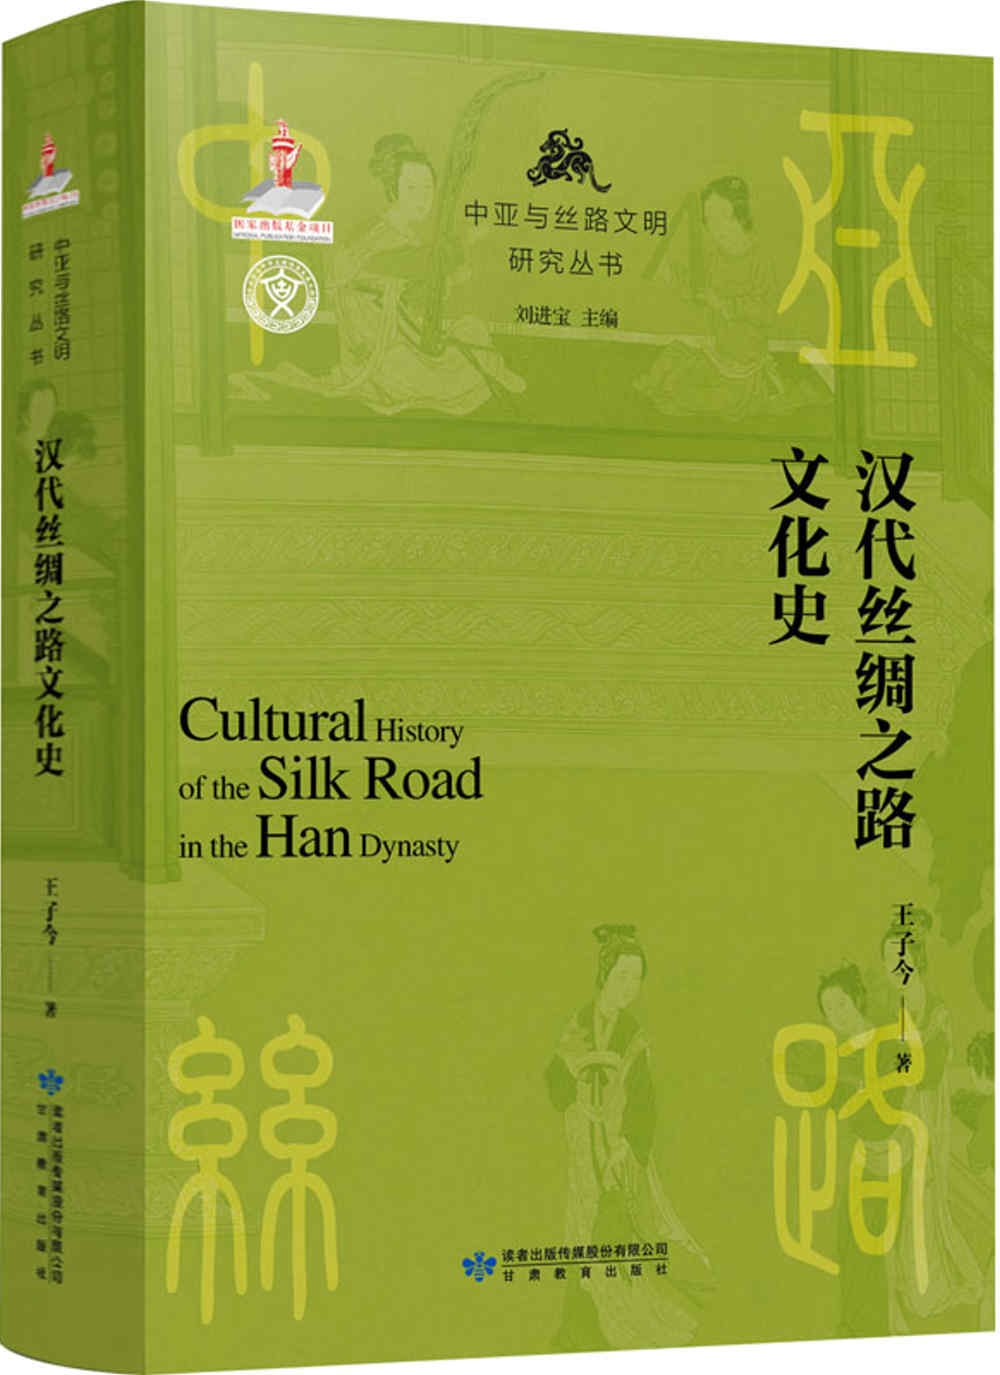 漢代絲綢之路文化史